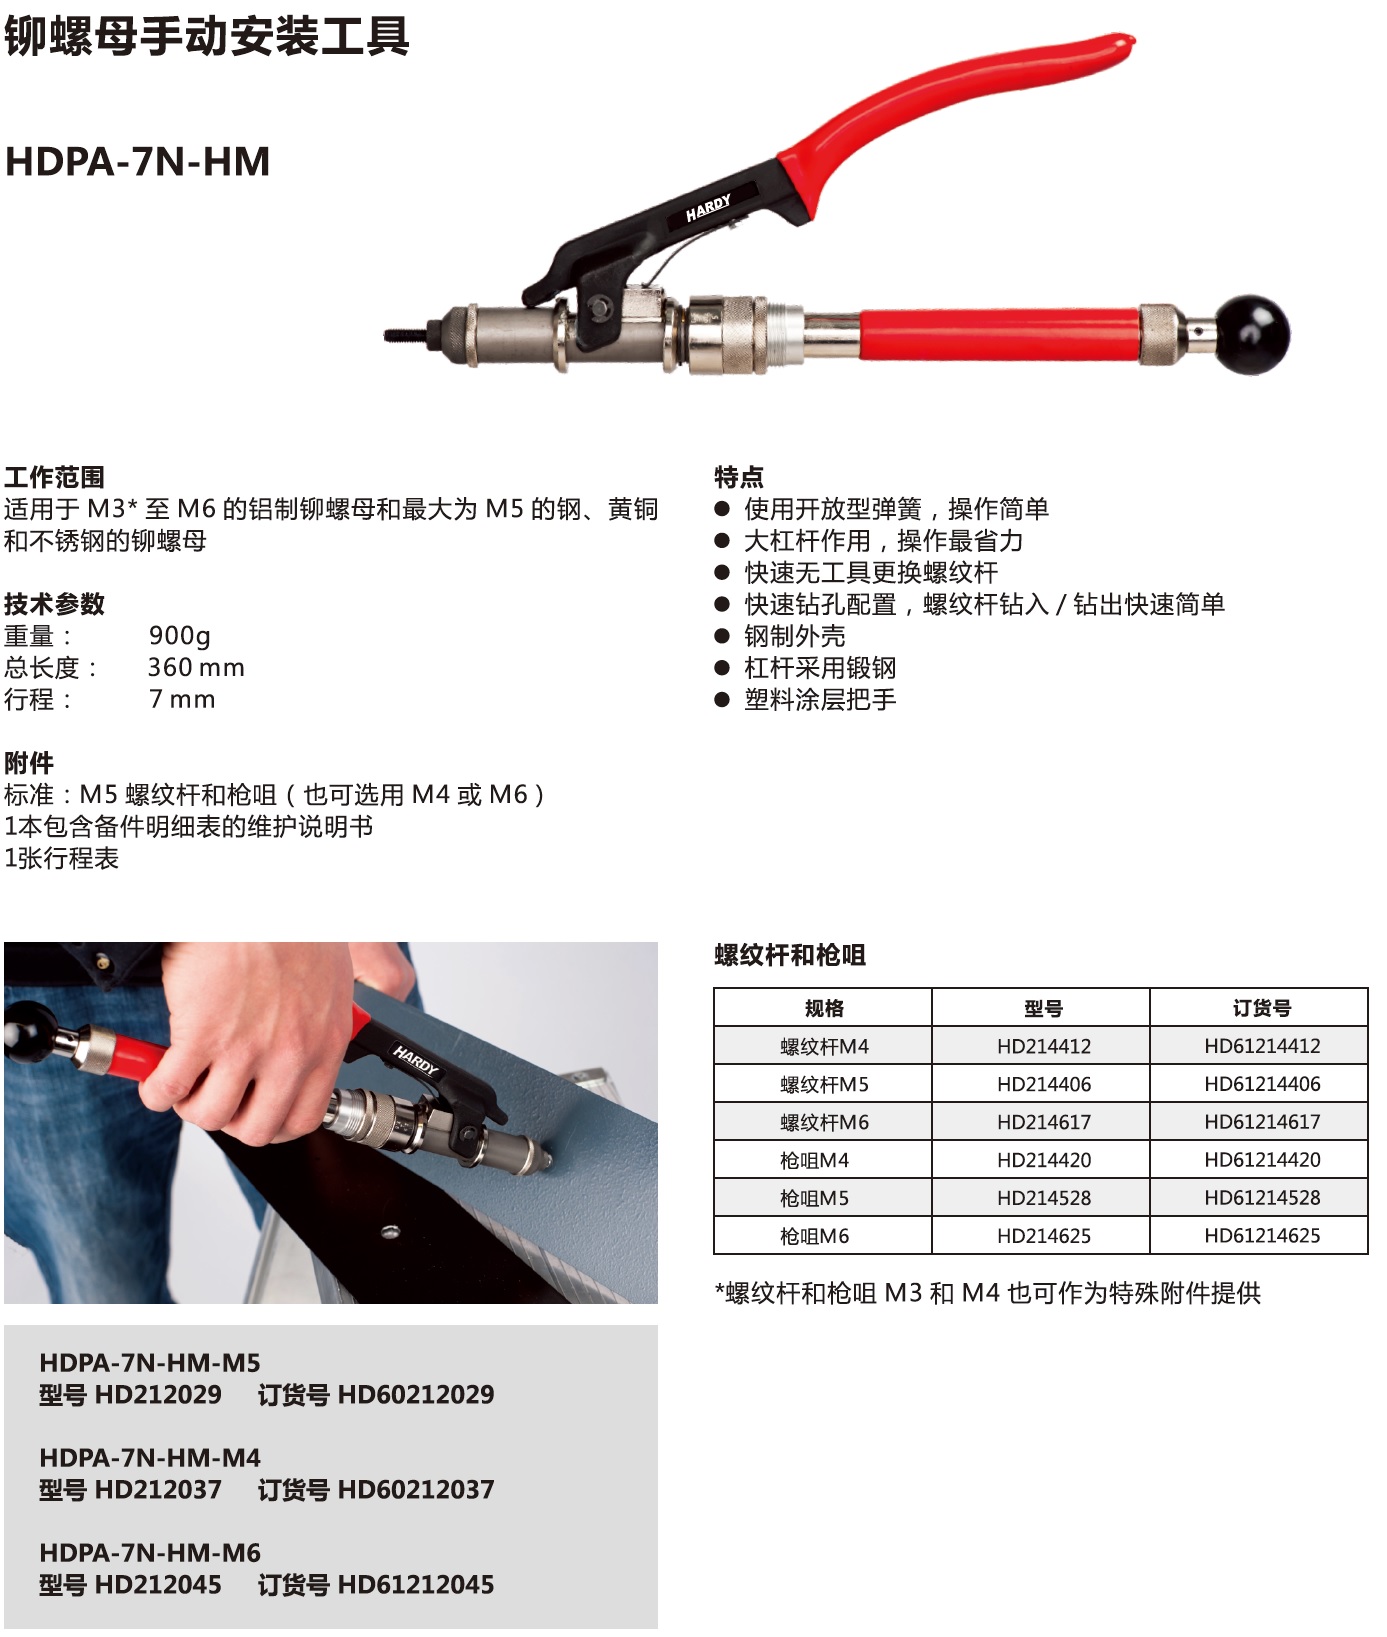 HDPA-7N-HM铆螺母手动安装工具.jpg